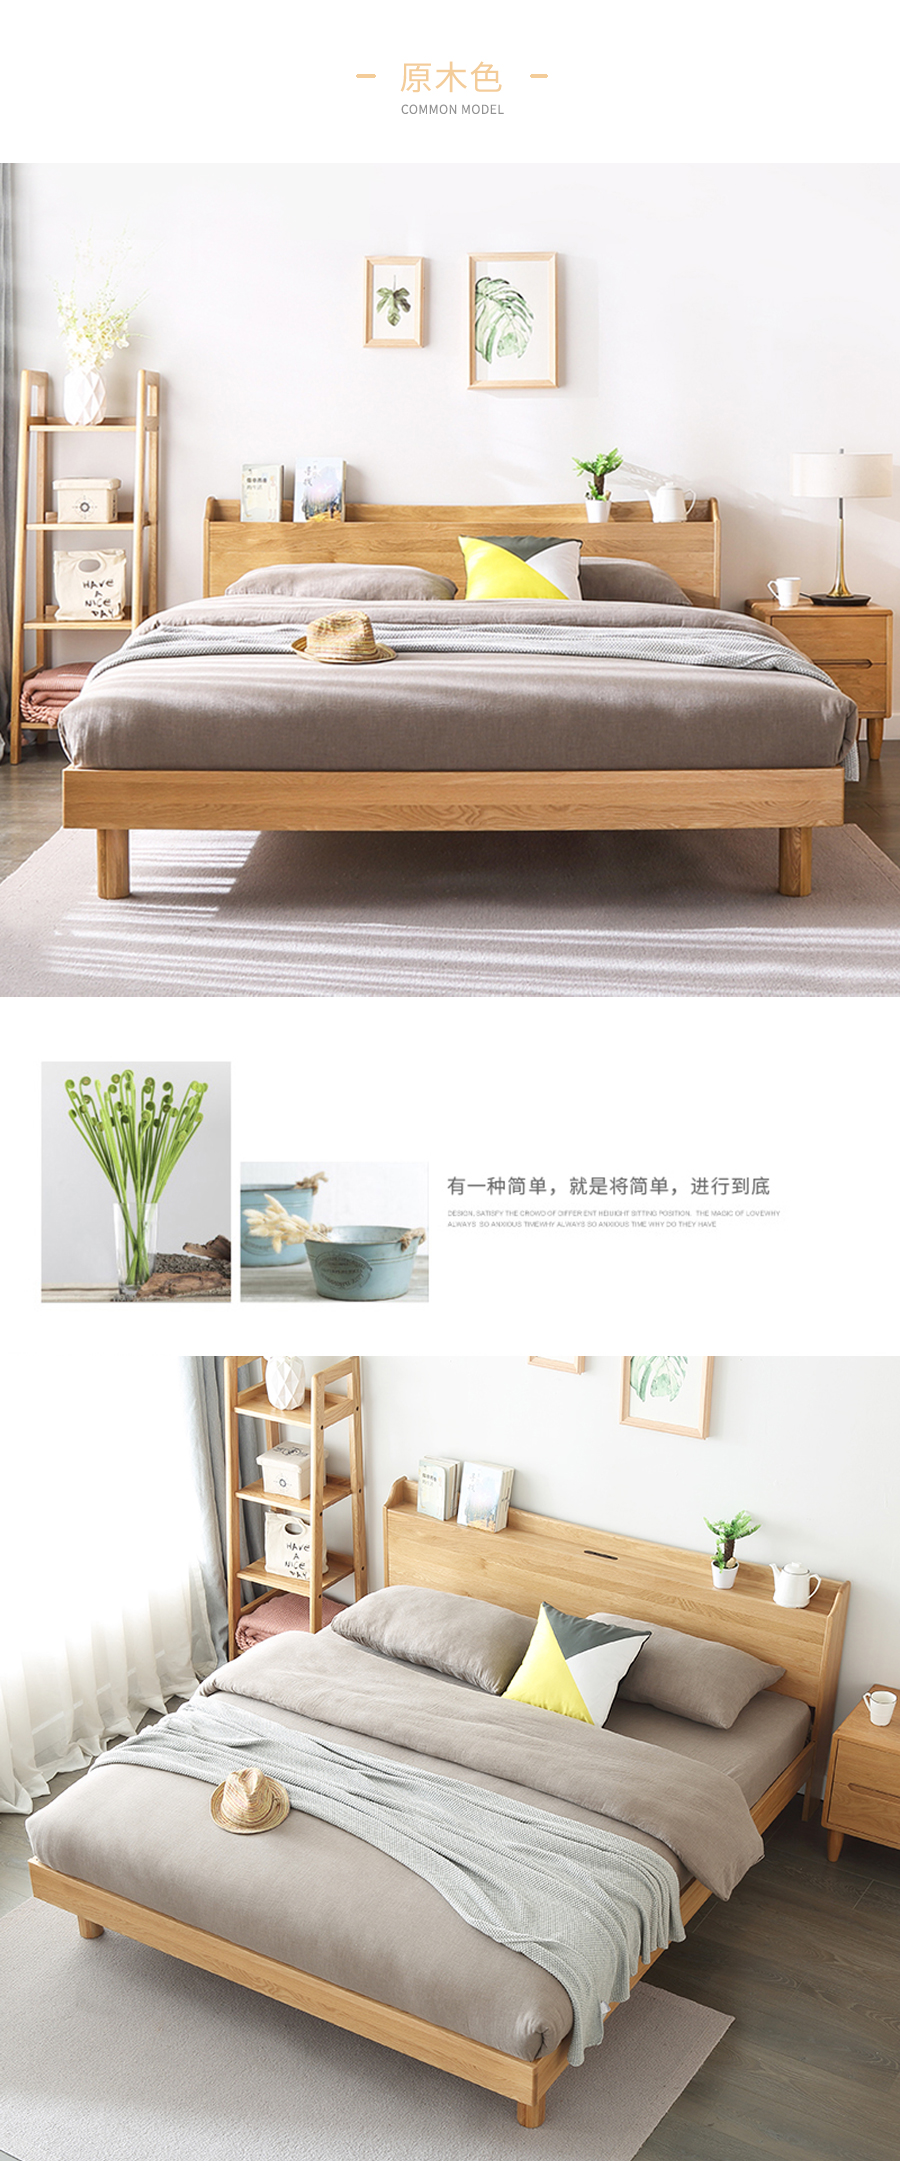 星空梵高 现代简约双人床白橡木床 木色生香 906插座床